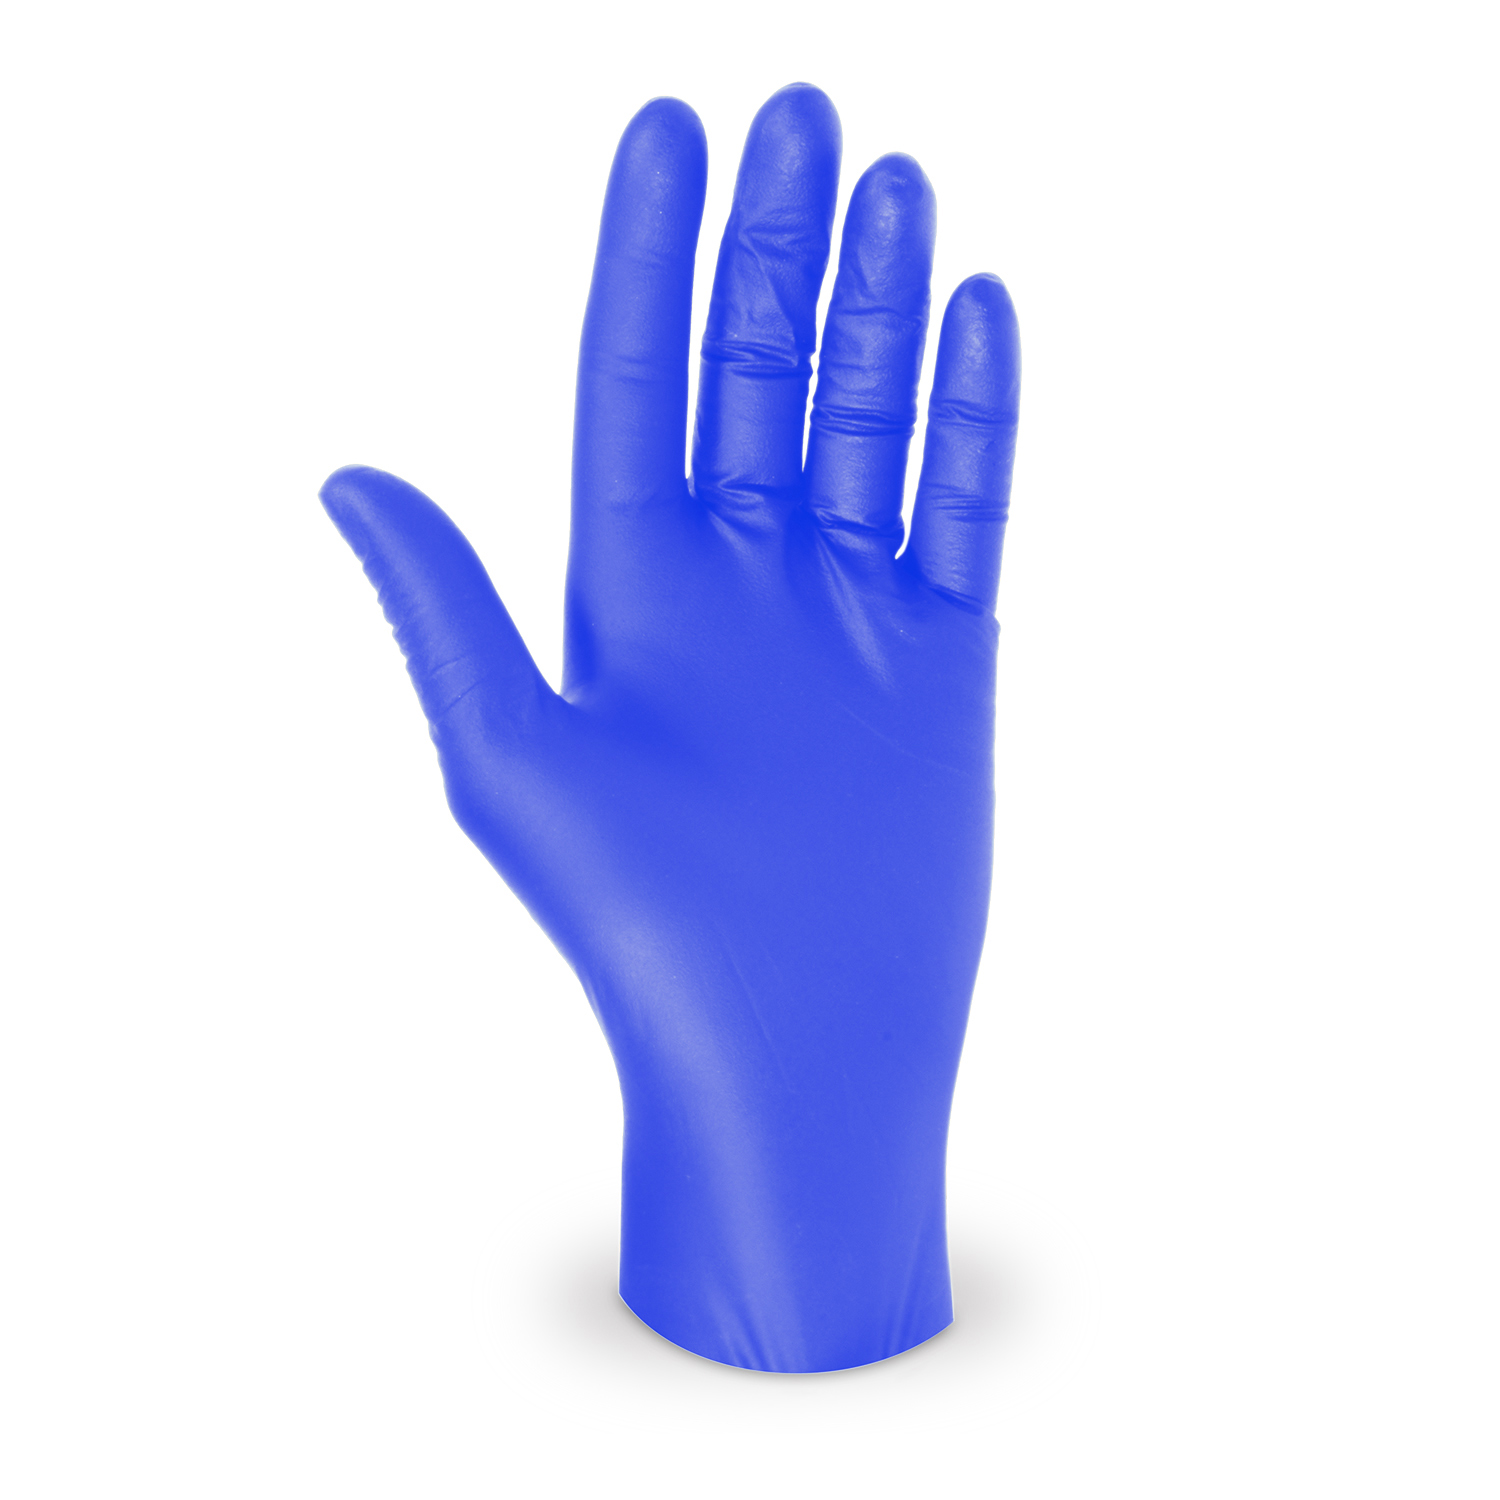 Handschuh (Nitril) ungepudert blau XL - 100 Stück